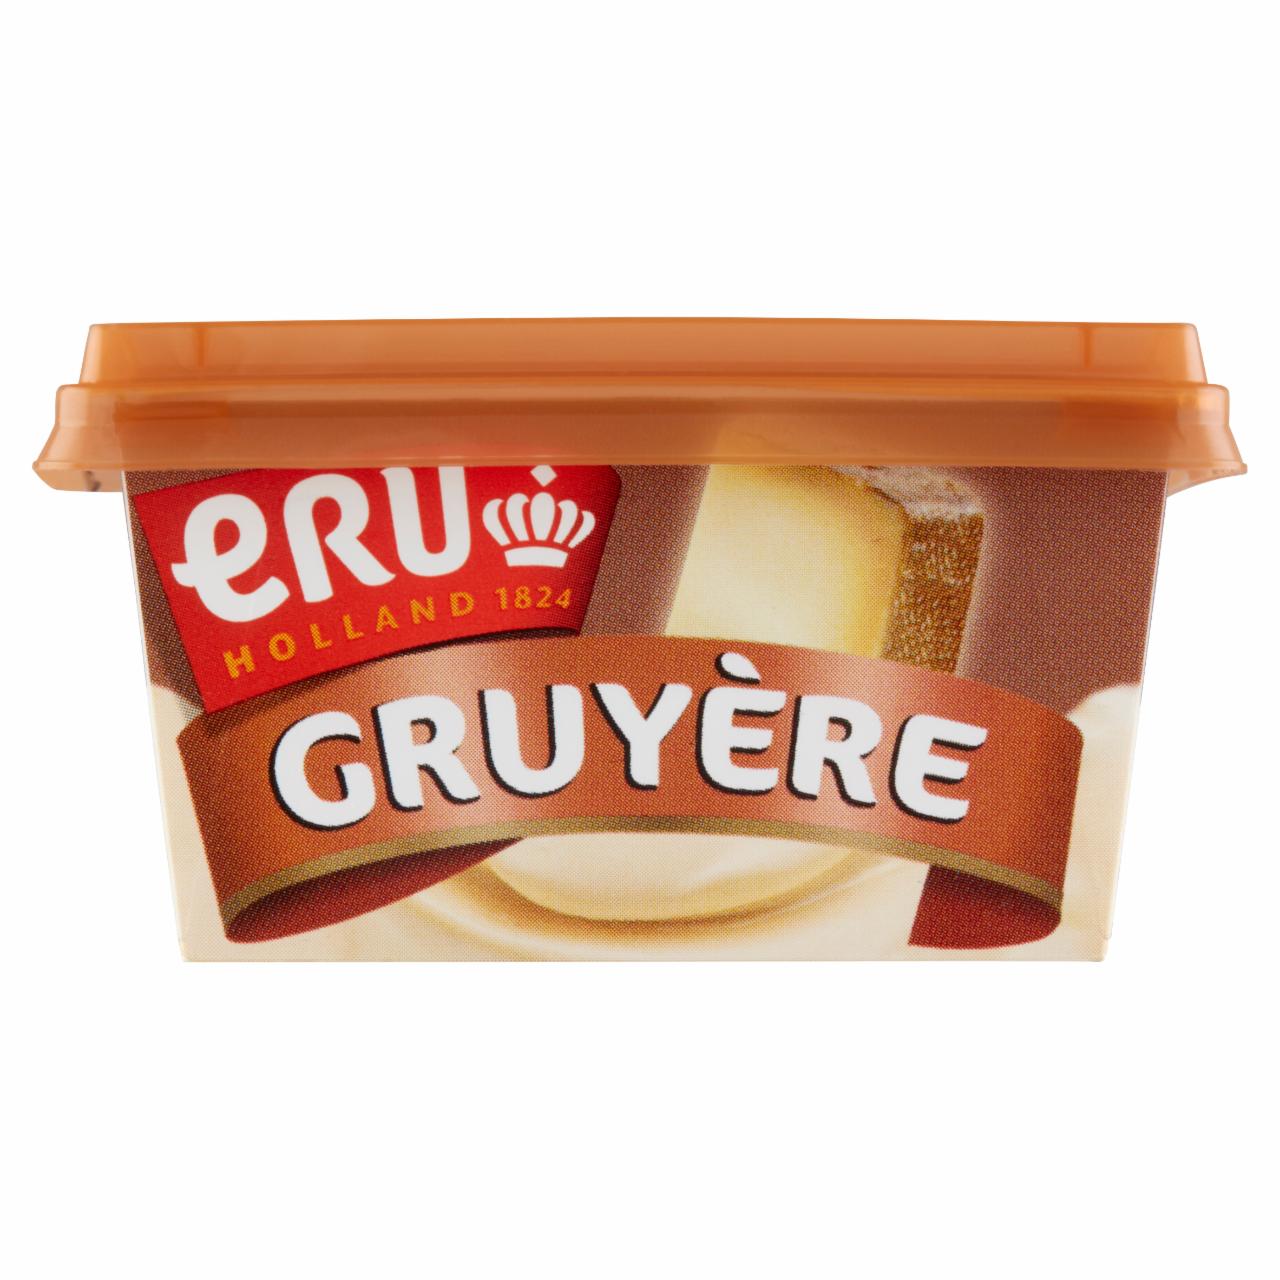 Képek - ERU Gruyère kenhető zsíros ömlesztett sajtkrém svájci Gruyère sajttal 100 g